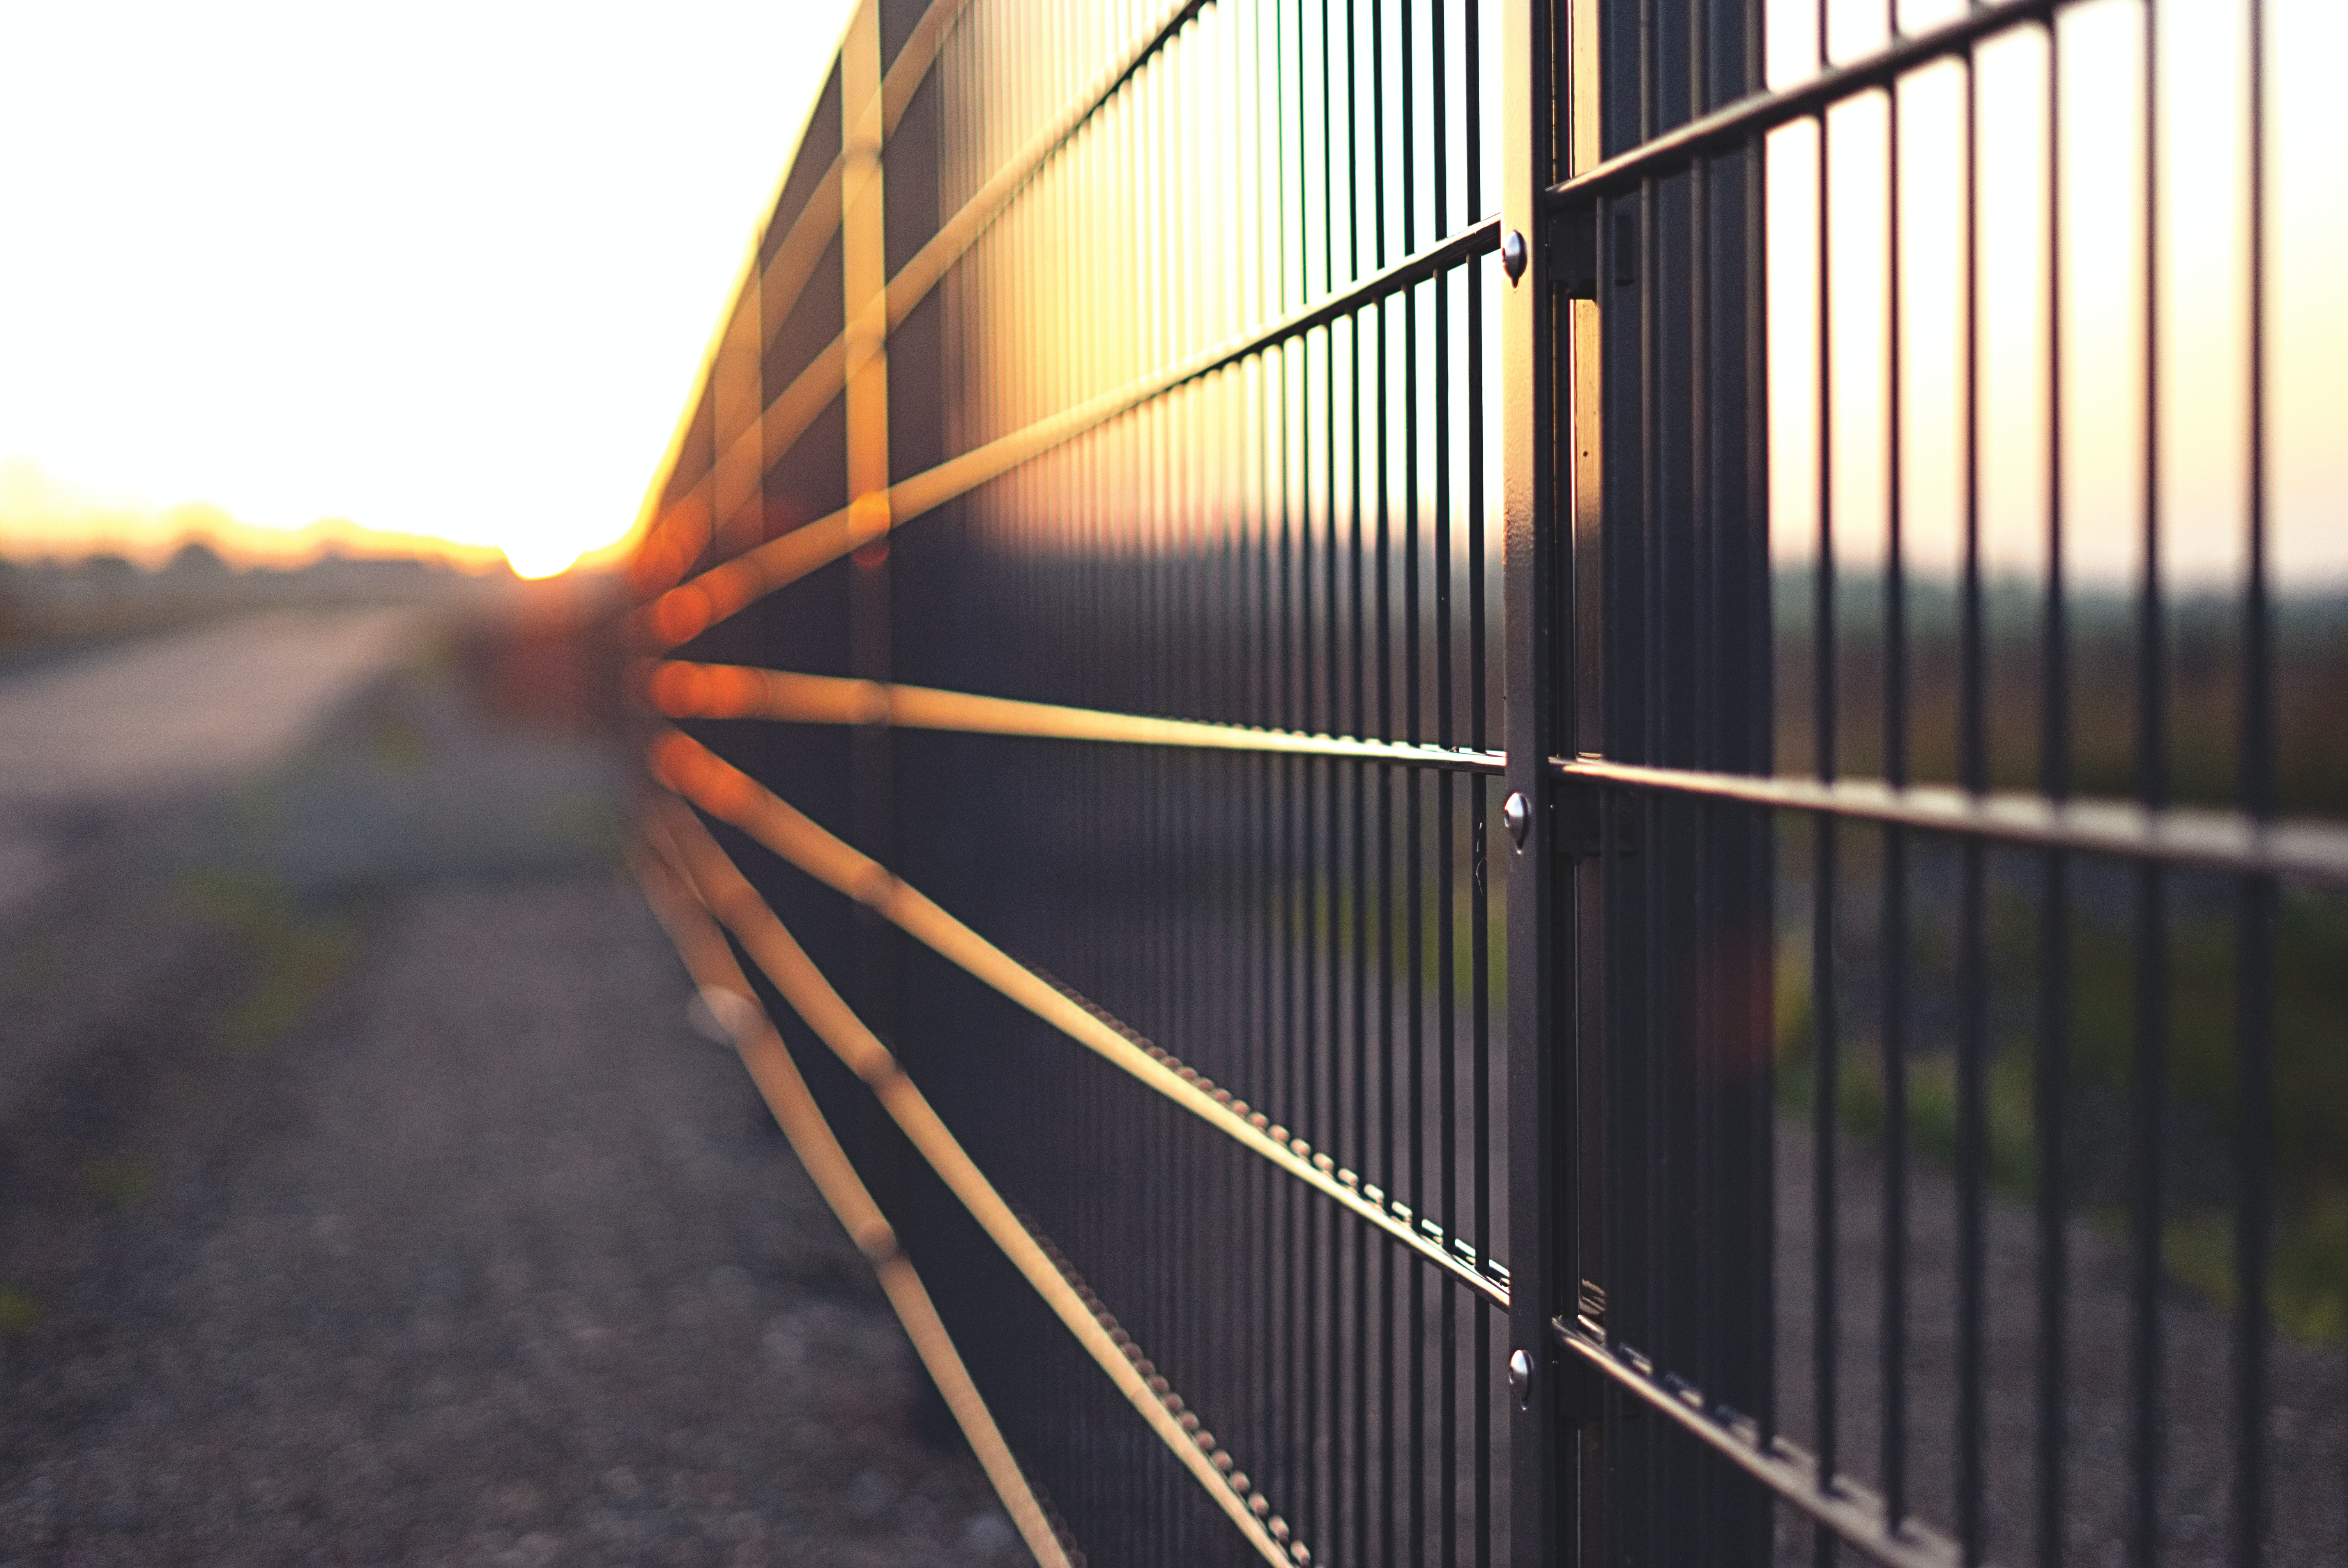 Ako dnes vyzerajú moderné ploty? Poradíme vám s výberom tých najmodernejších na trhu.